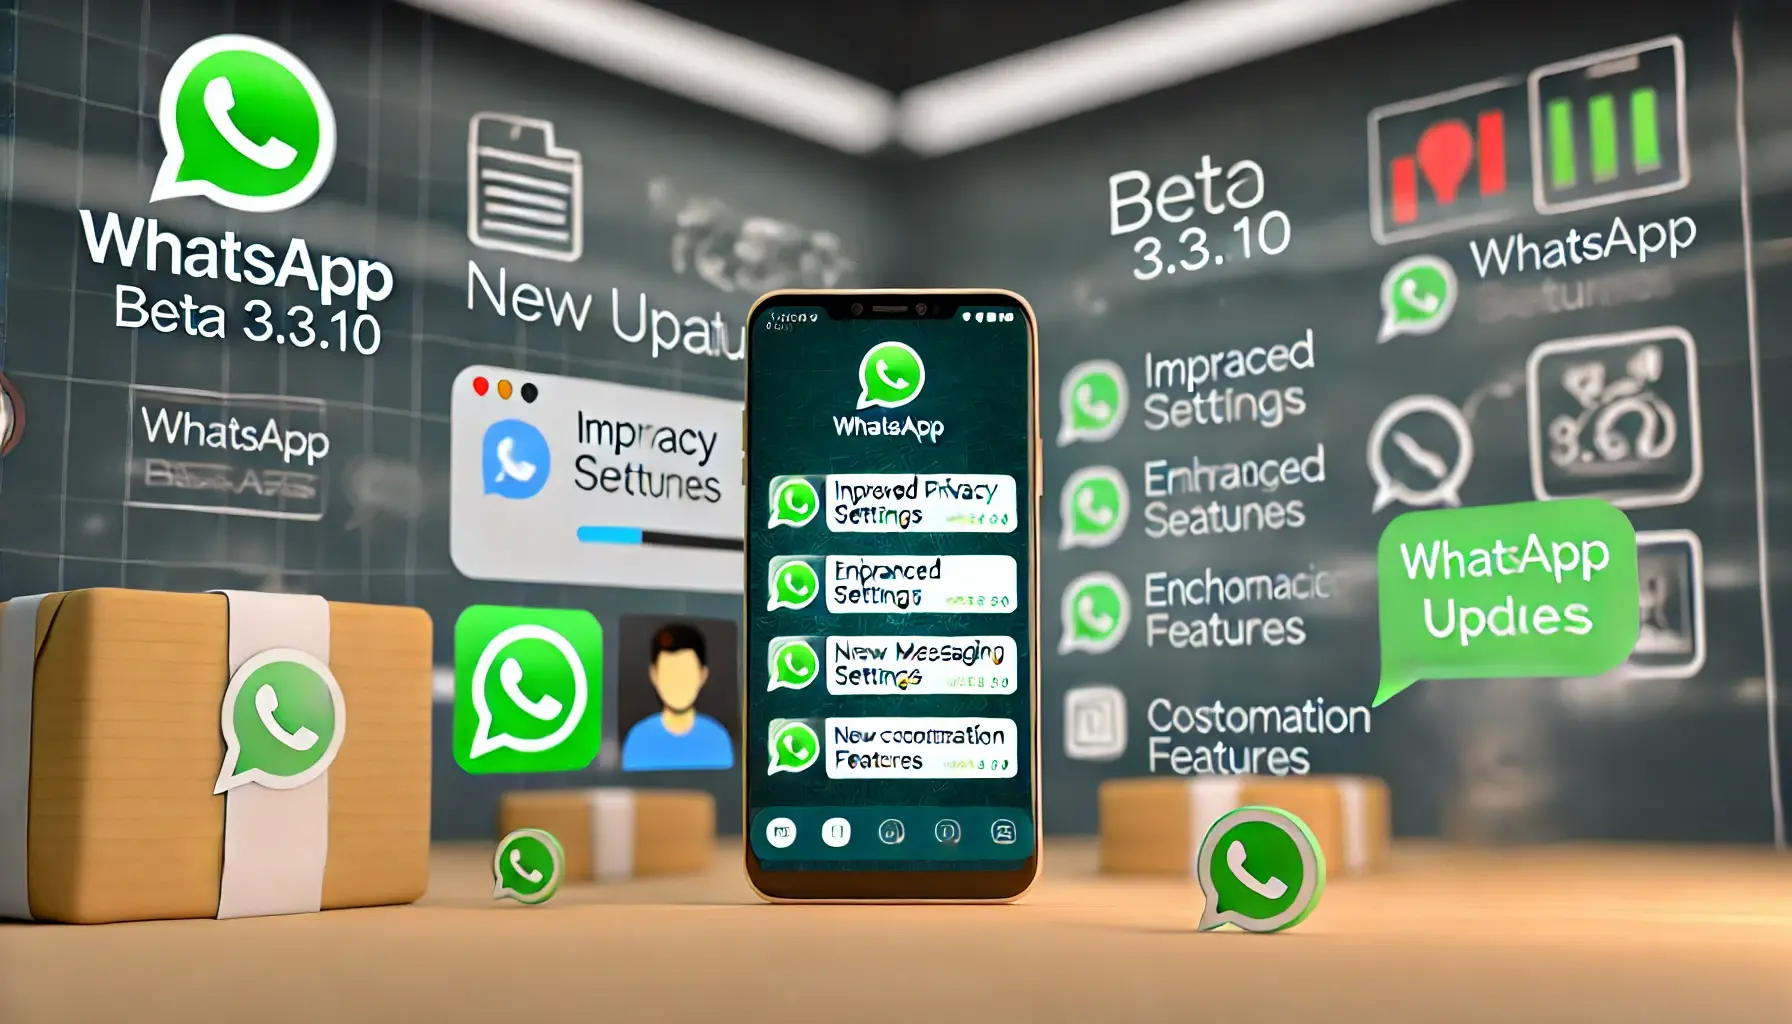 WhatsApp Beta 3.3.10: Análise Completa das Novidades e Melhorias